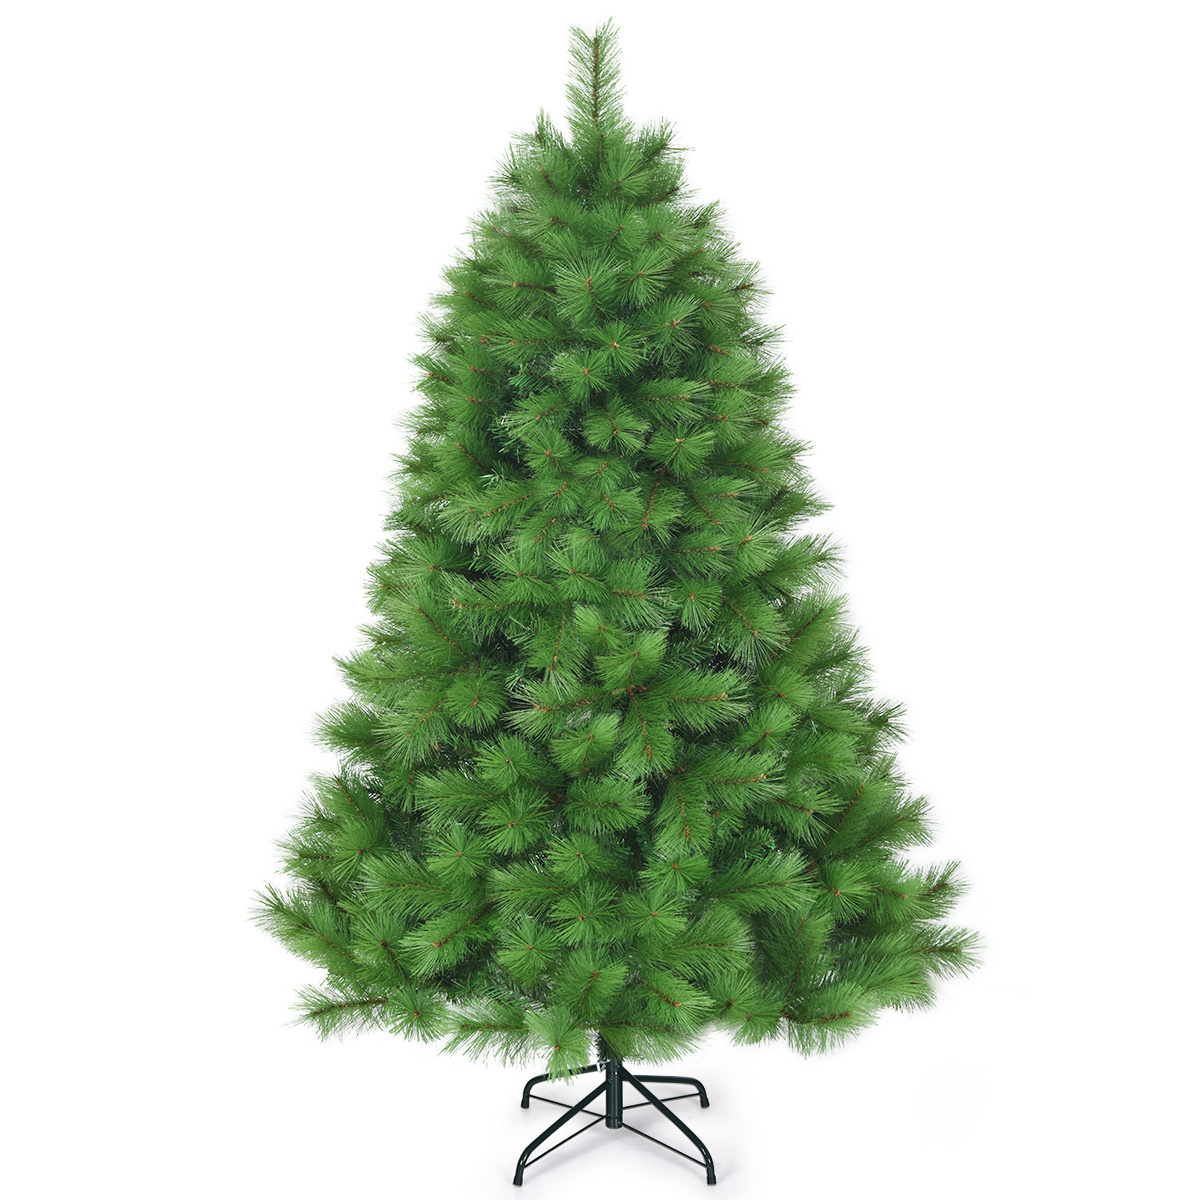 Nach 18 günstig Kaufen-Coast 180 cm künstlicher Weihnachtsbaum Weihnachtsbaum pvc Nadeln künstlicher Baum mit Metallständer grün. Coast 180 cm künstlicher Weihnachtsbaum Weihnachtsbaum pvc Nadeln künstlicher Baum mit Metallständer grün <!